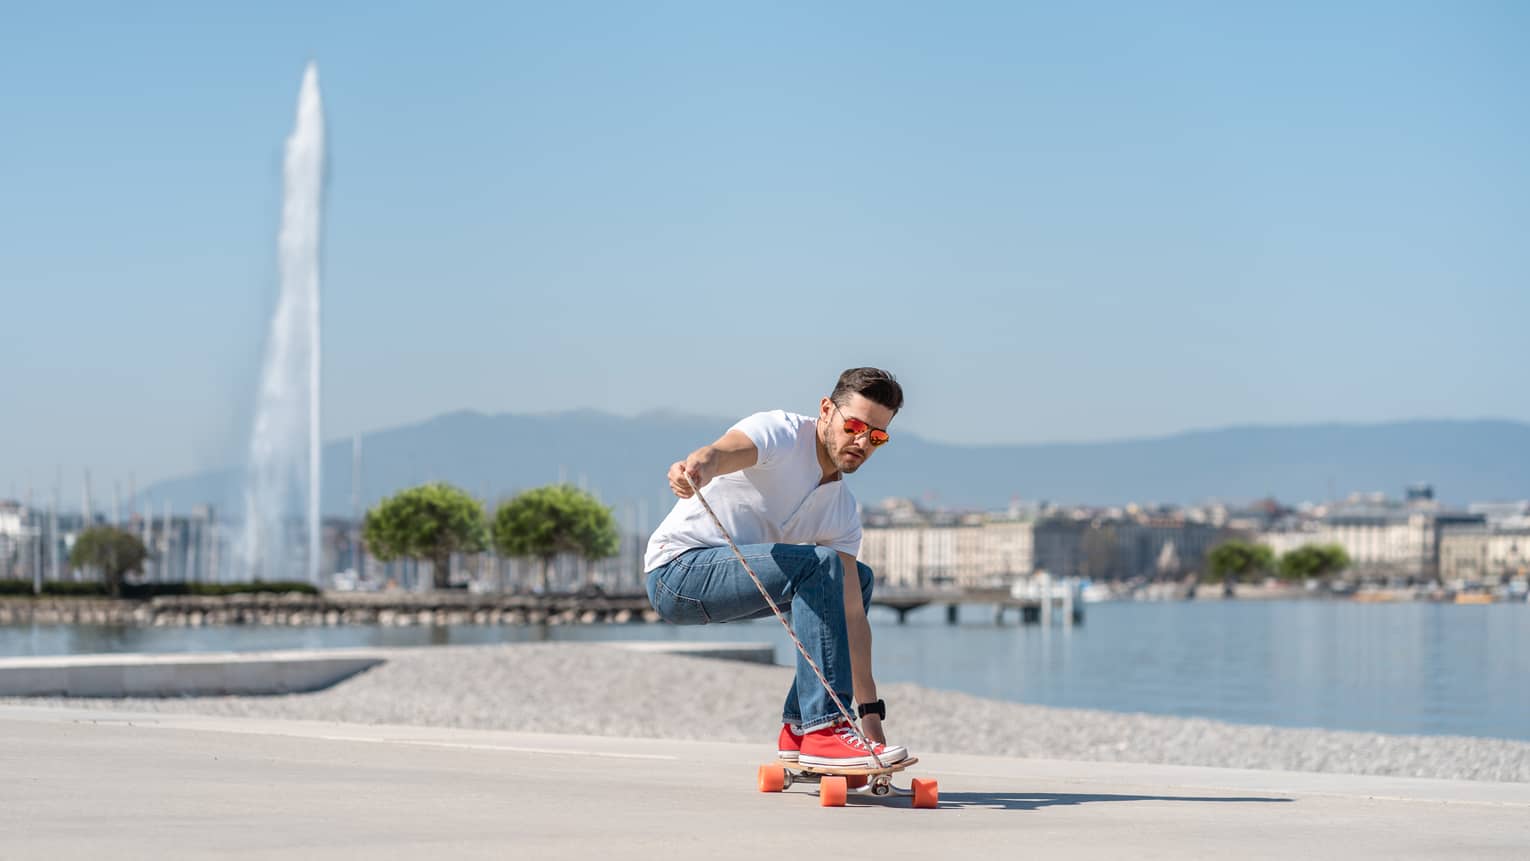 Man longboarding on sidewalk along Lake Geneva with Jet d'Eau fountain in backdrop